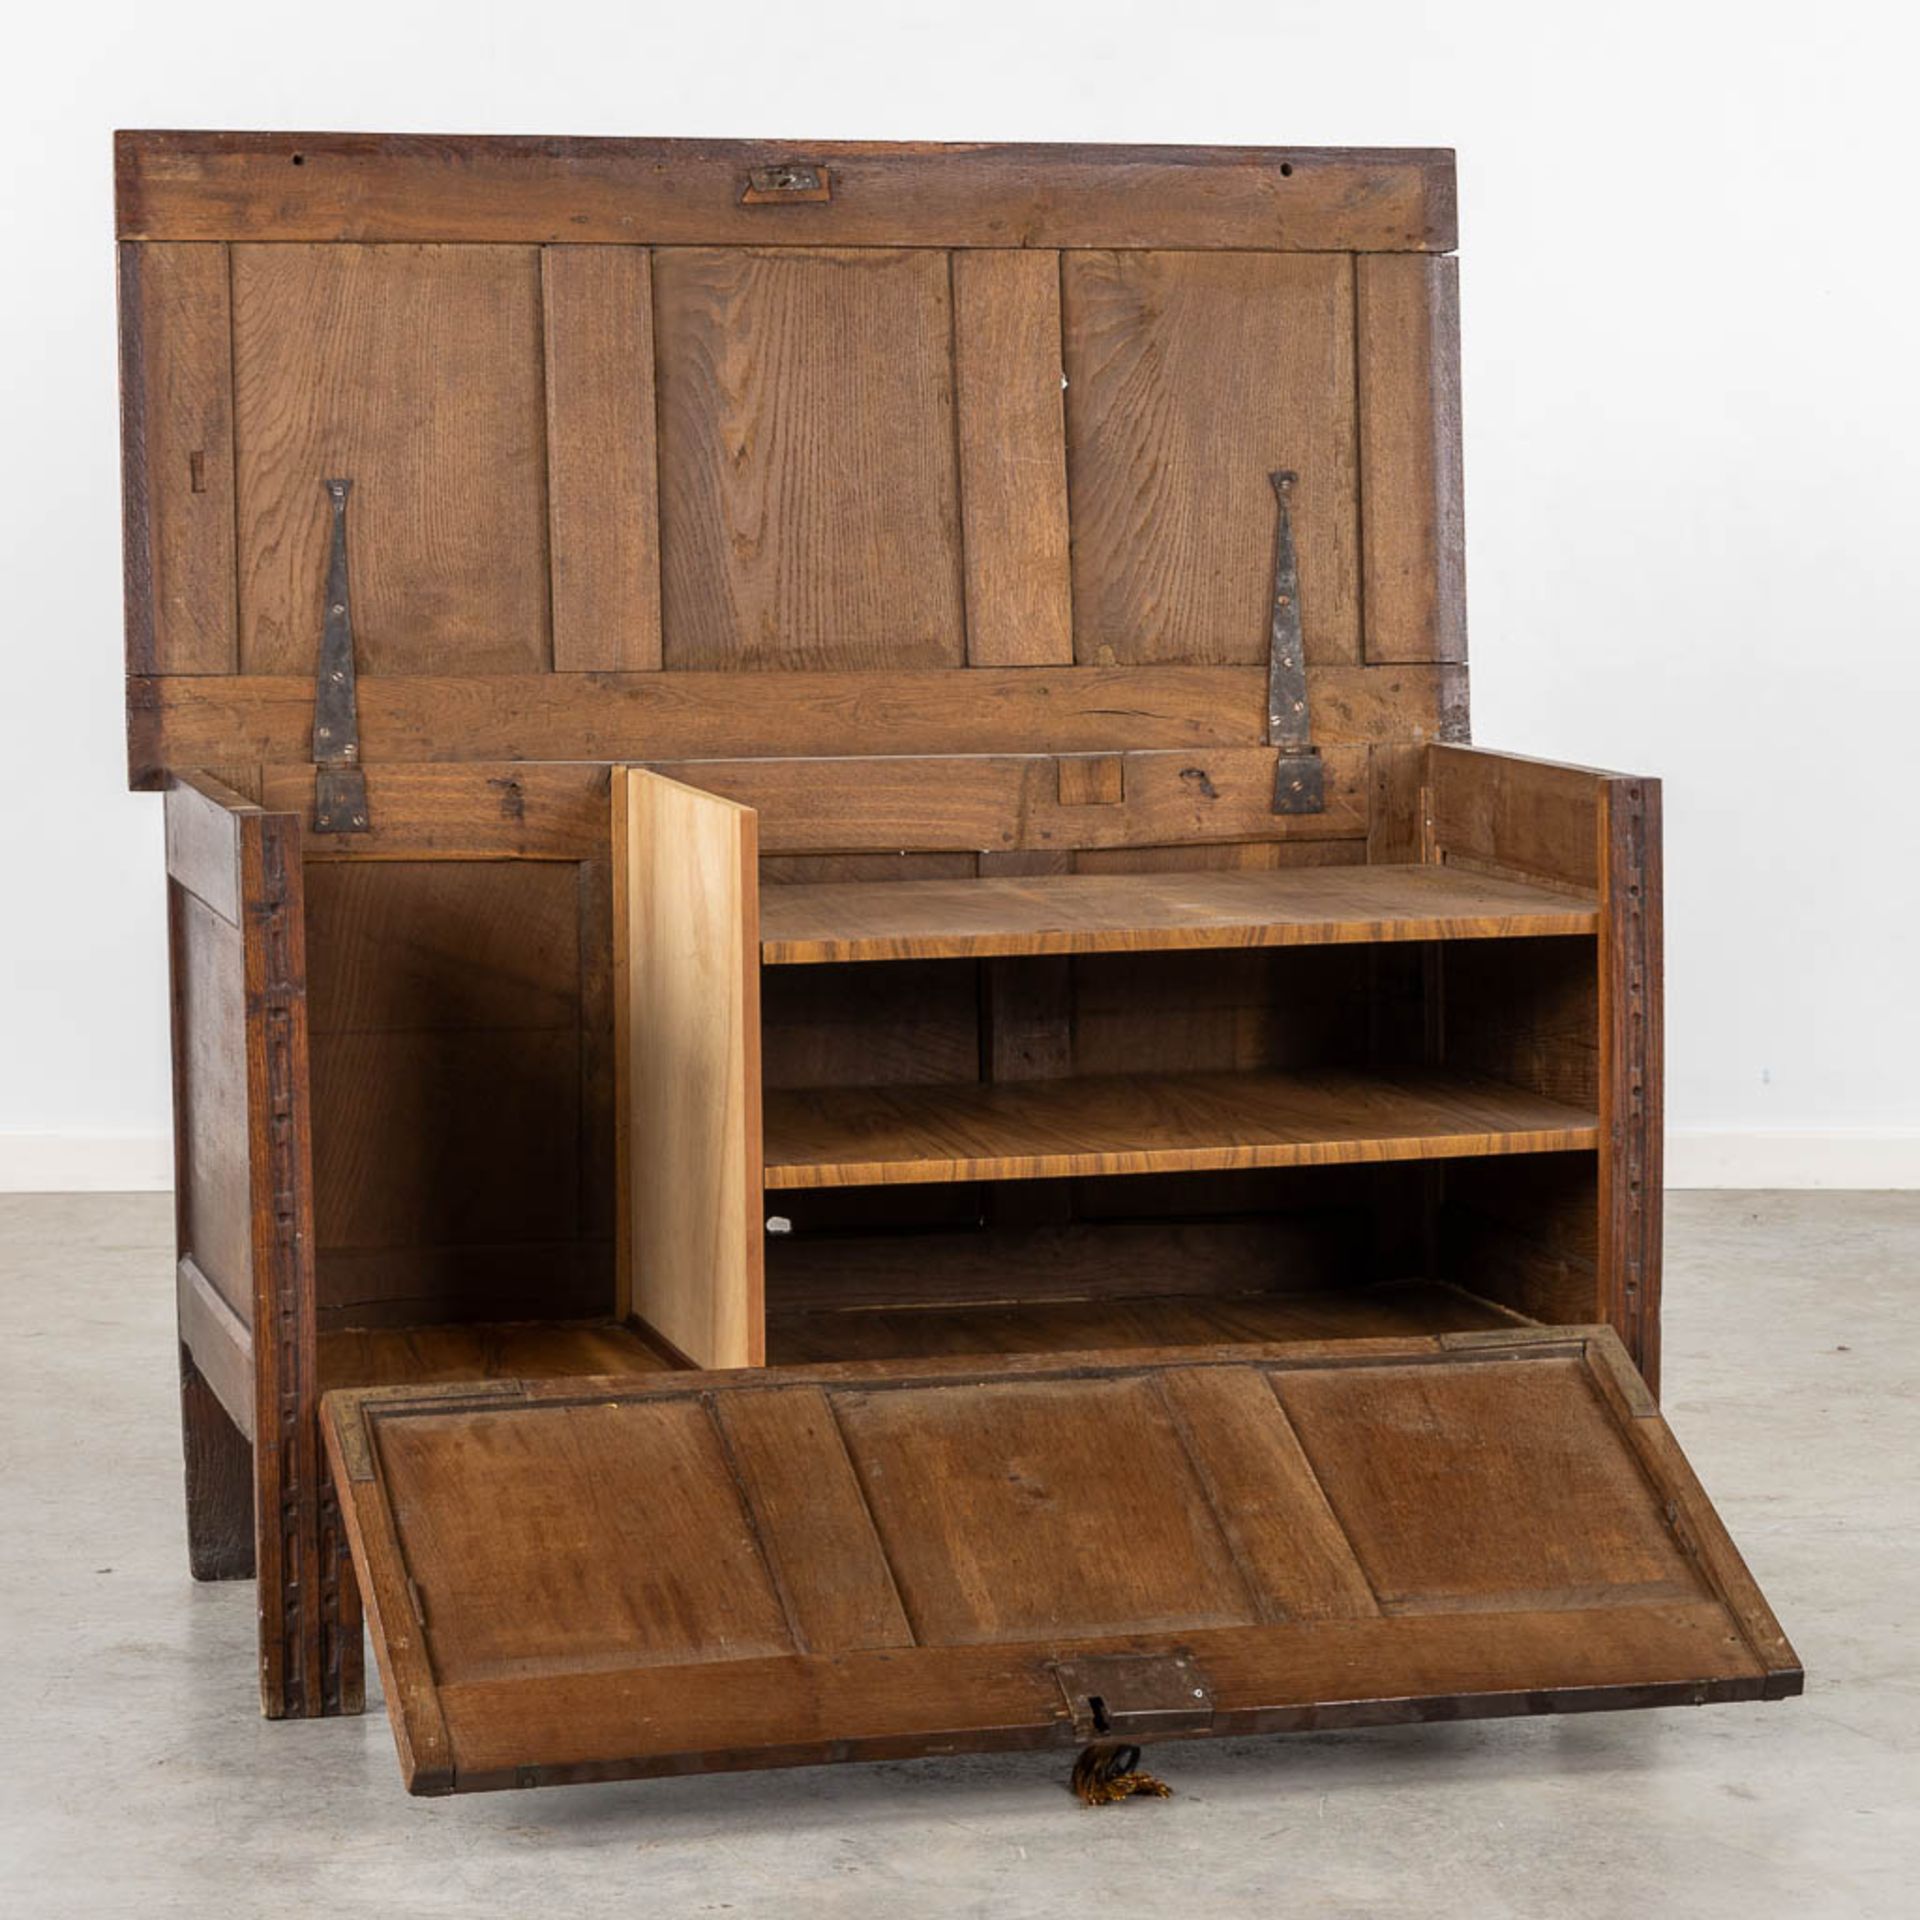 A chest with wood-sculptured panels. 19th C. (L:56 x W:120 x H:72 cm) - Bild 4 aus 11